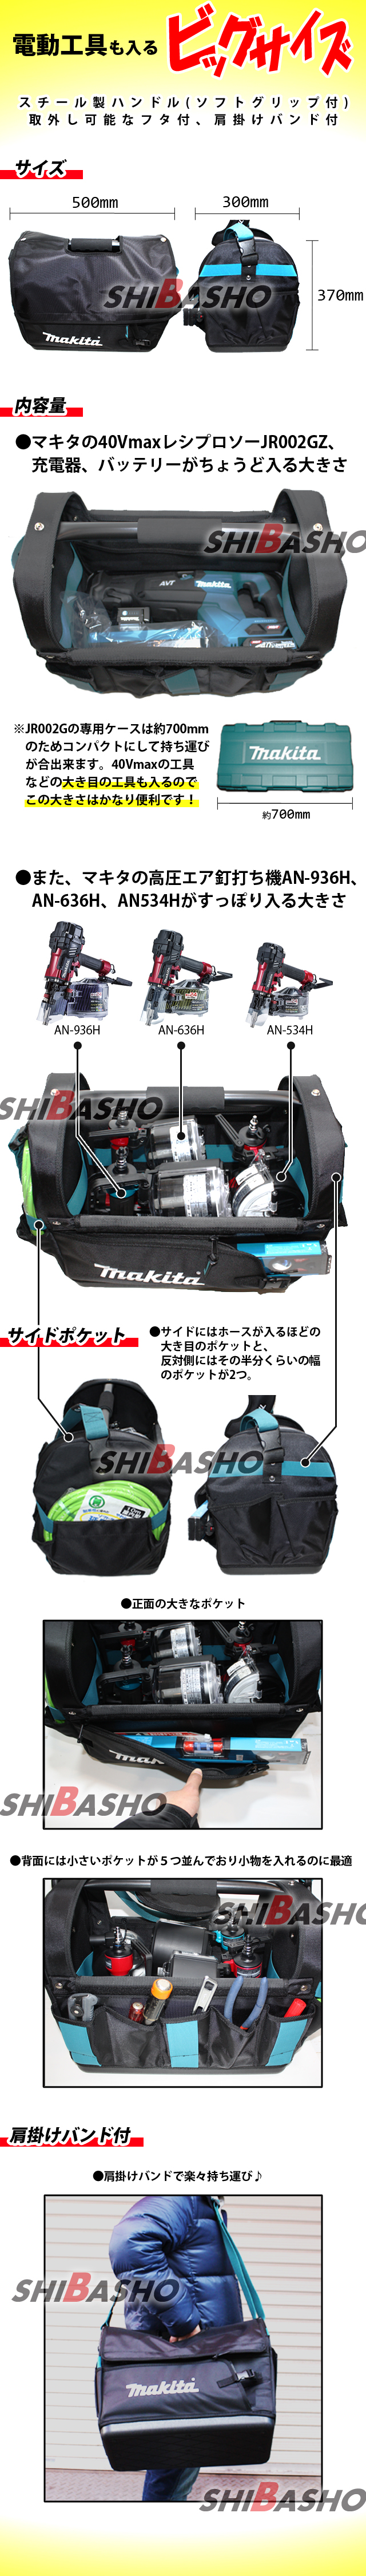 マキタ 工具用トートバッグ A-73243